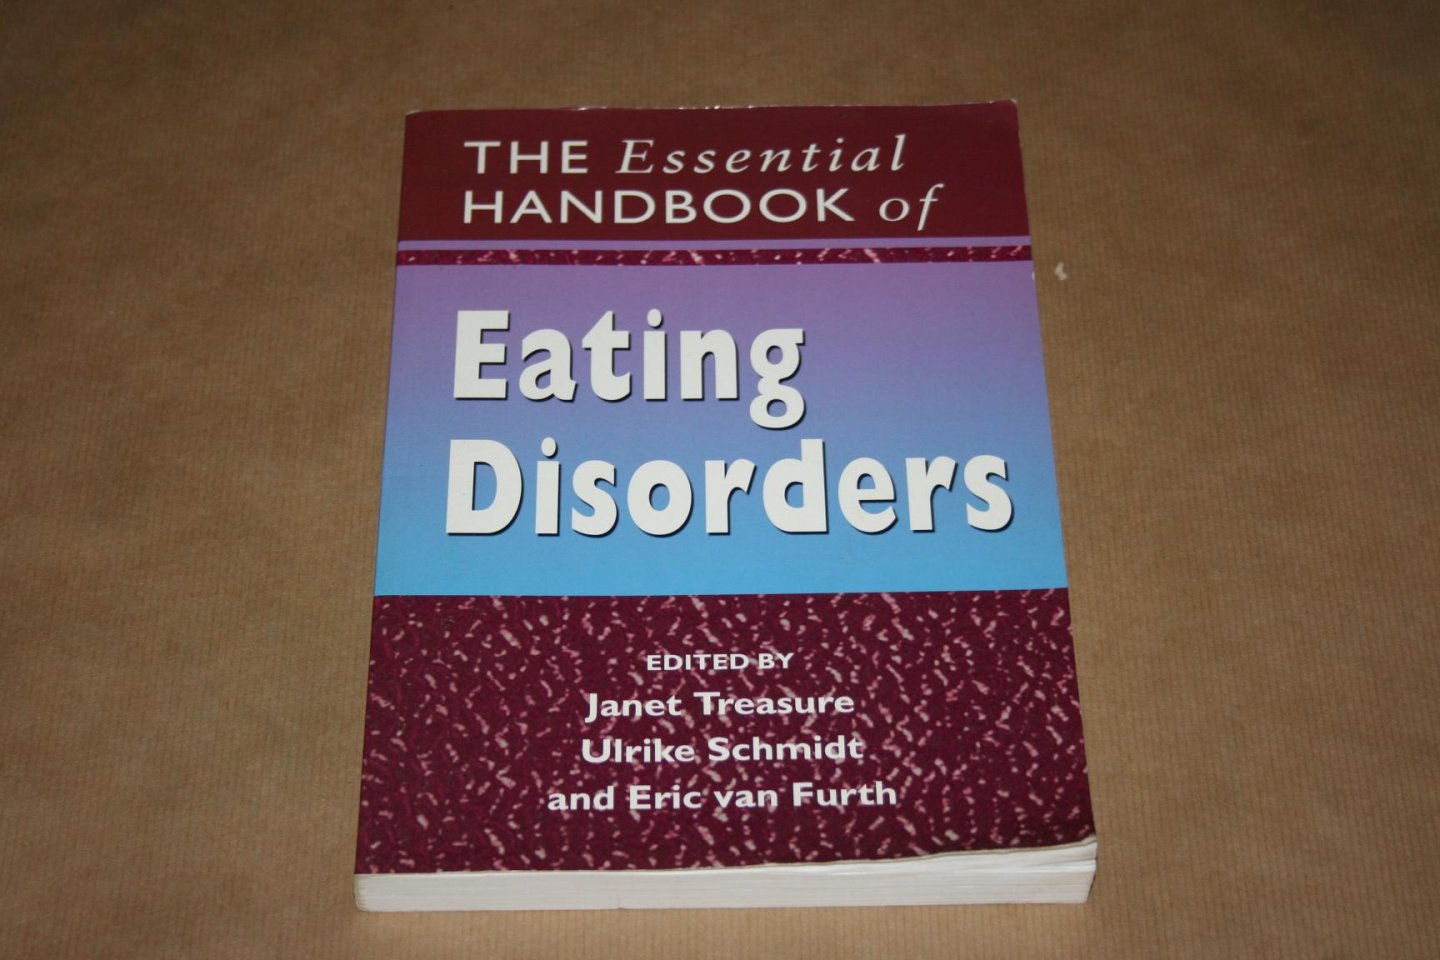 Treasure, Schmidt & van Furth - The essential Handbook of Eating Disorders